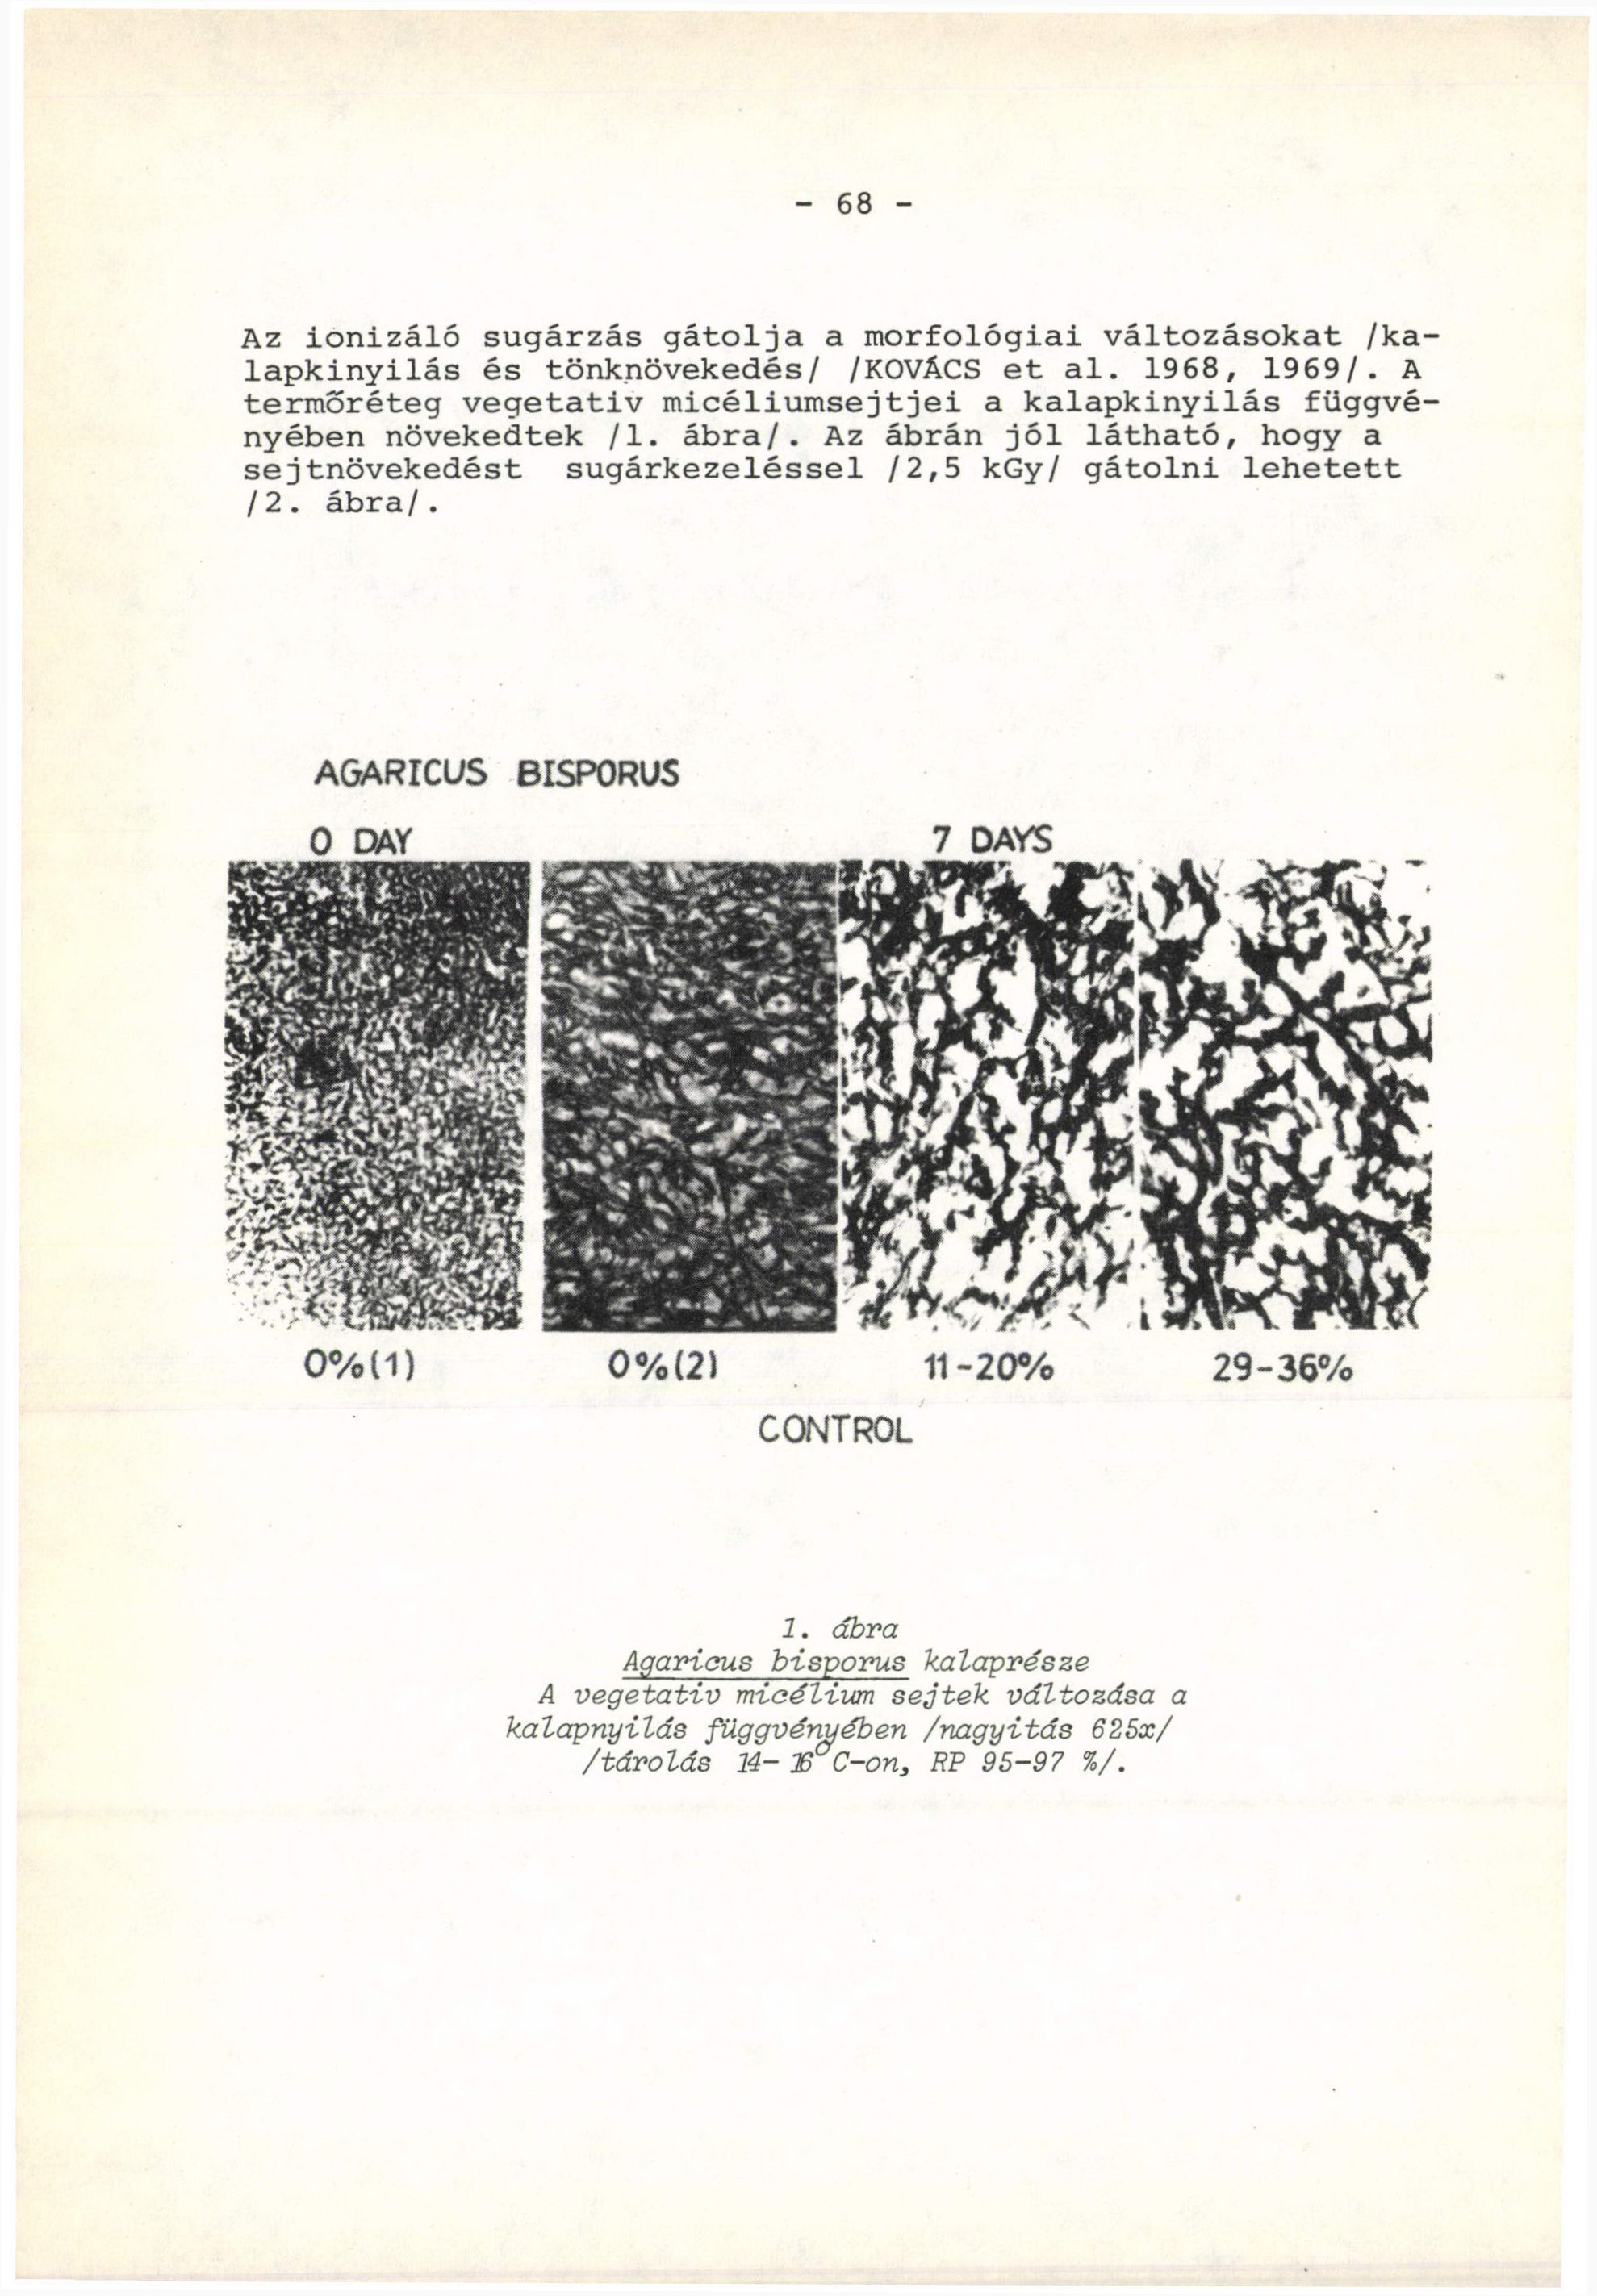 - 68 - Az ionizáló sugárzás gátolja a morfológiai változásokat /kalapkinyilás és tönknövekedés/ /KOVÁCS et al. 1968, 1969/.